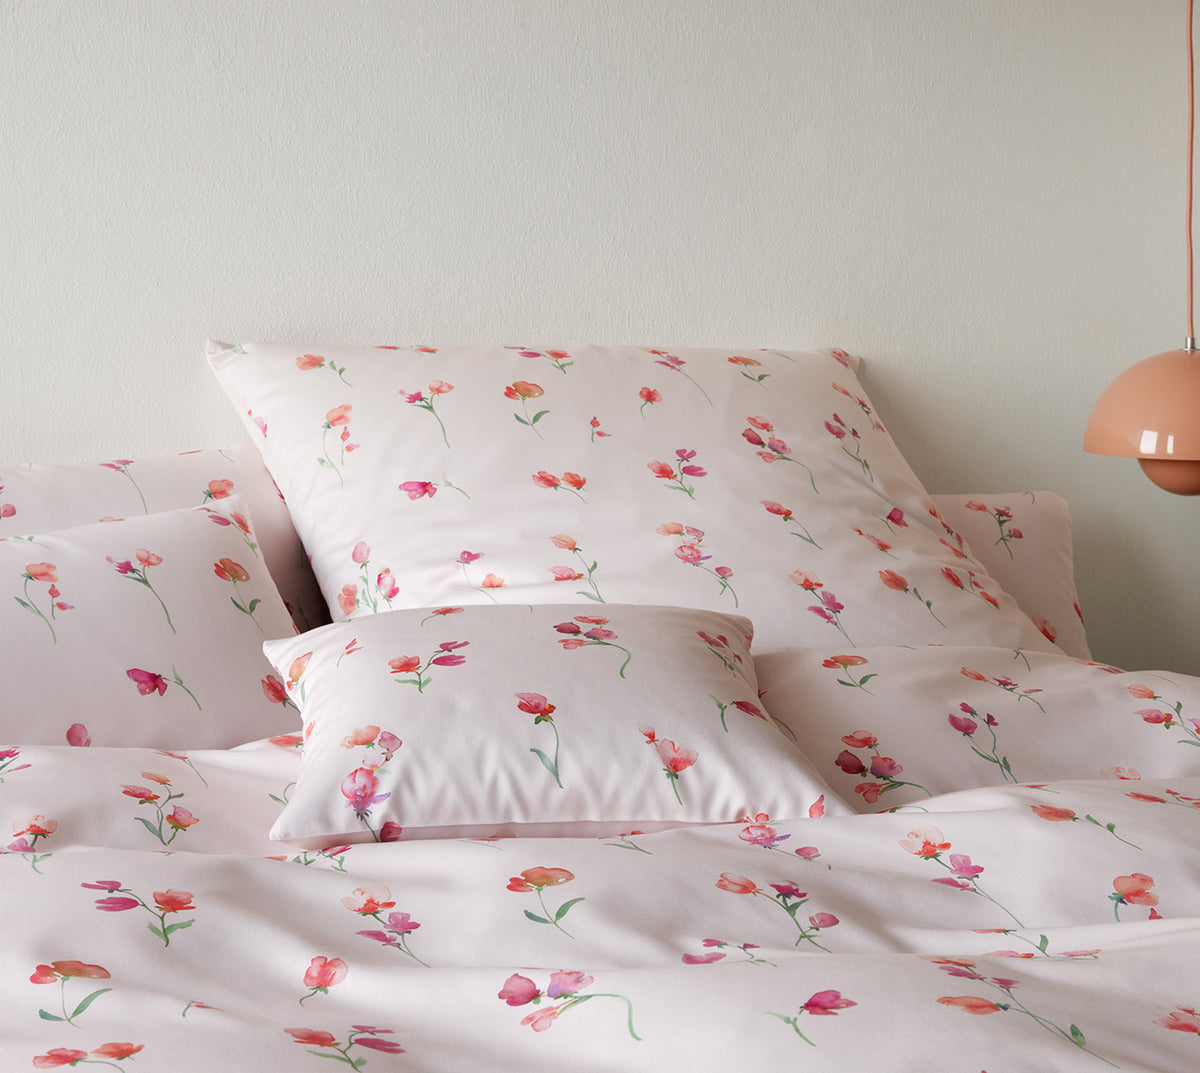 Seiden Satin Bettwaesche Nappy in Rose Blumen Schlafzimmer #farbe_Rose